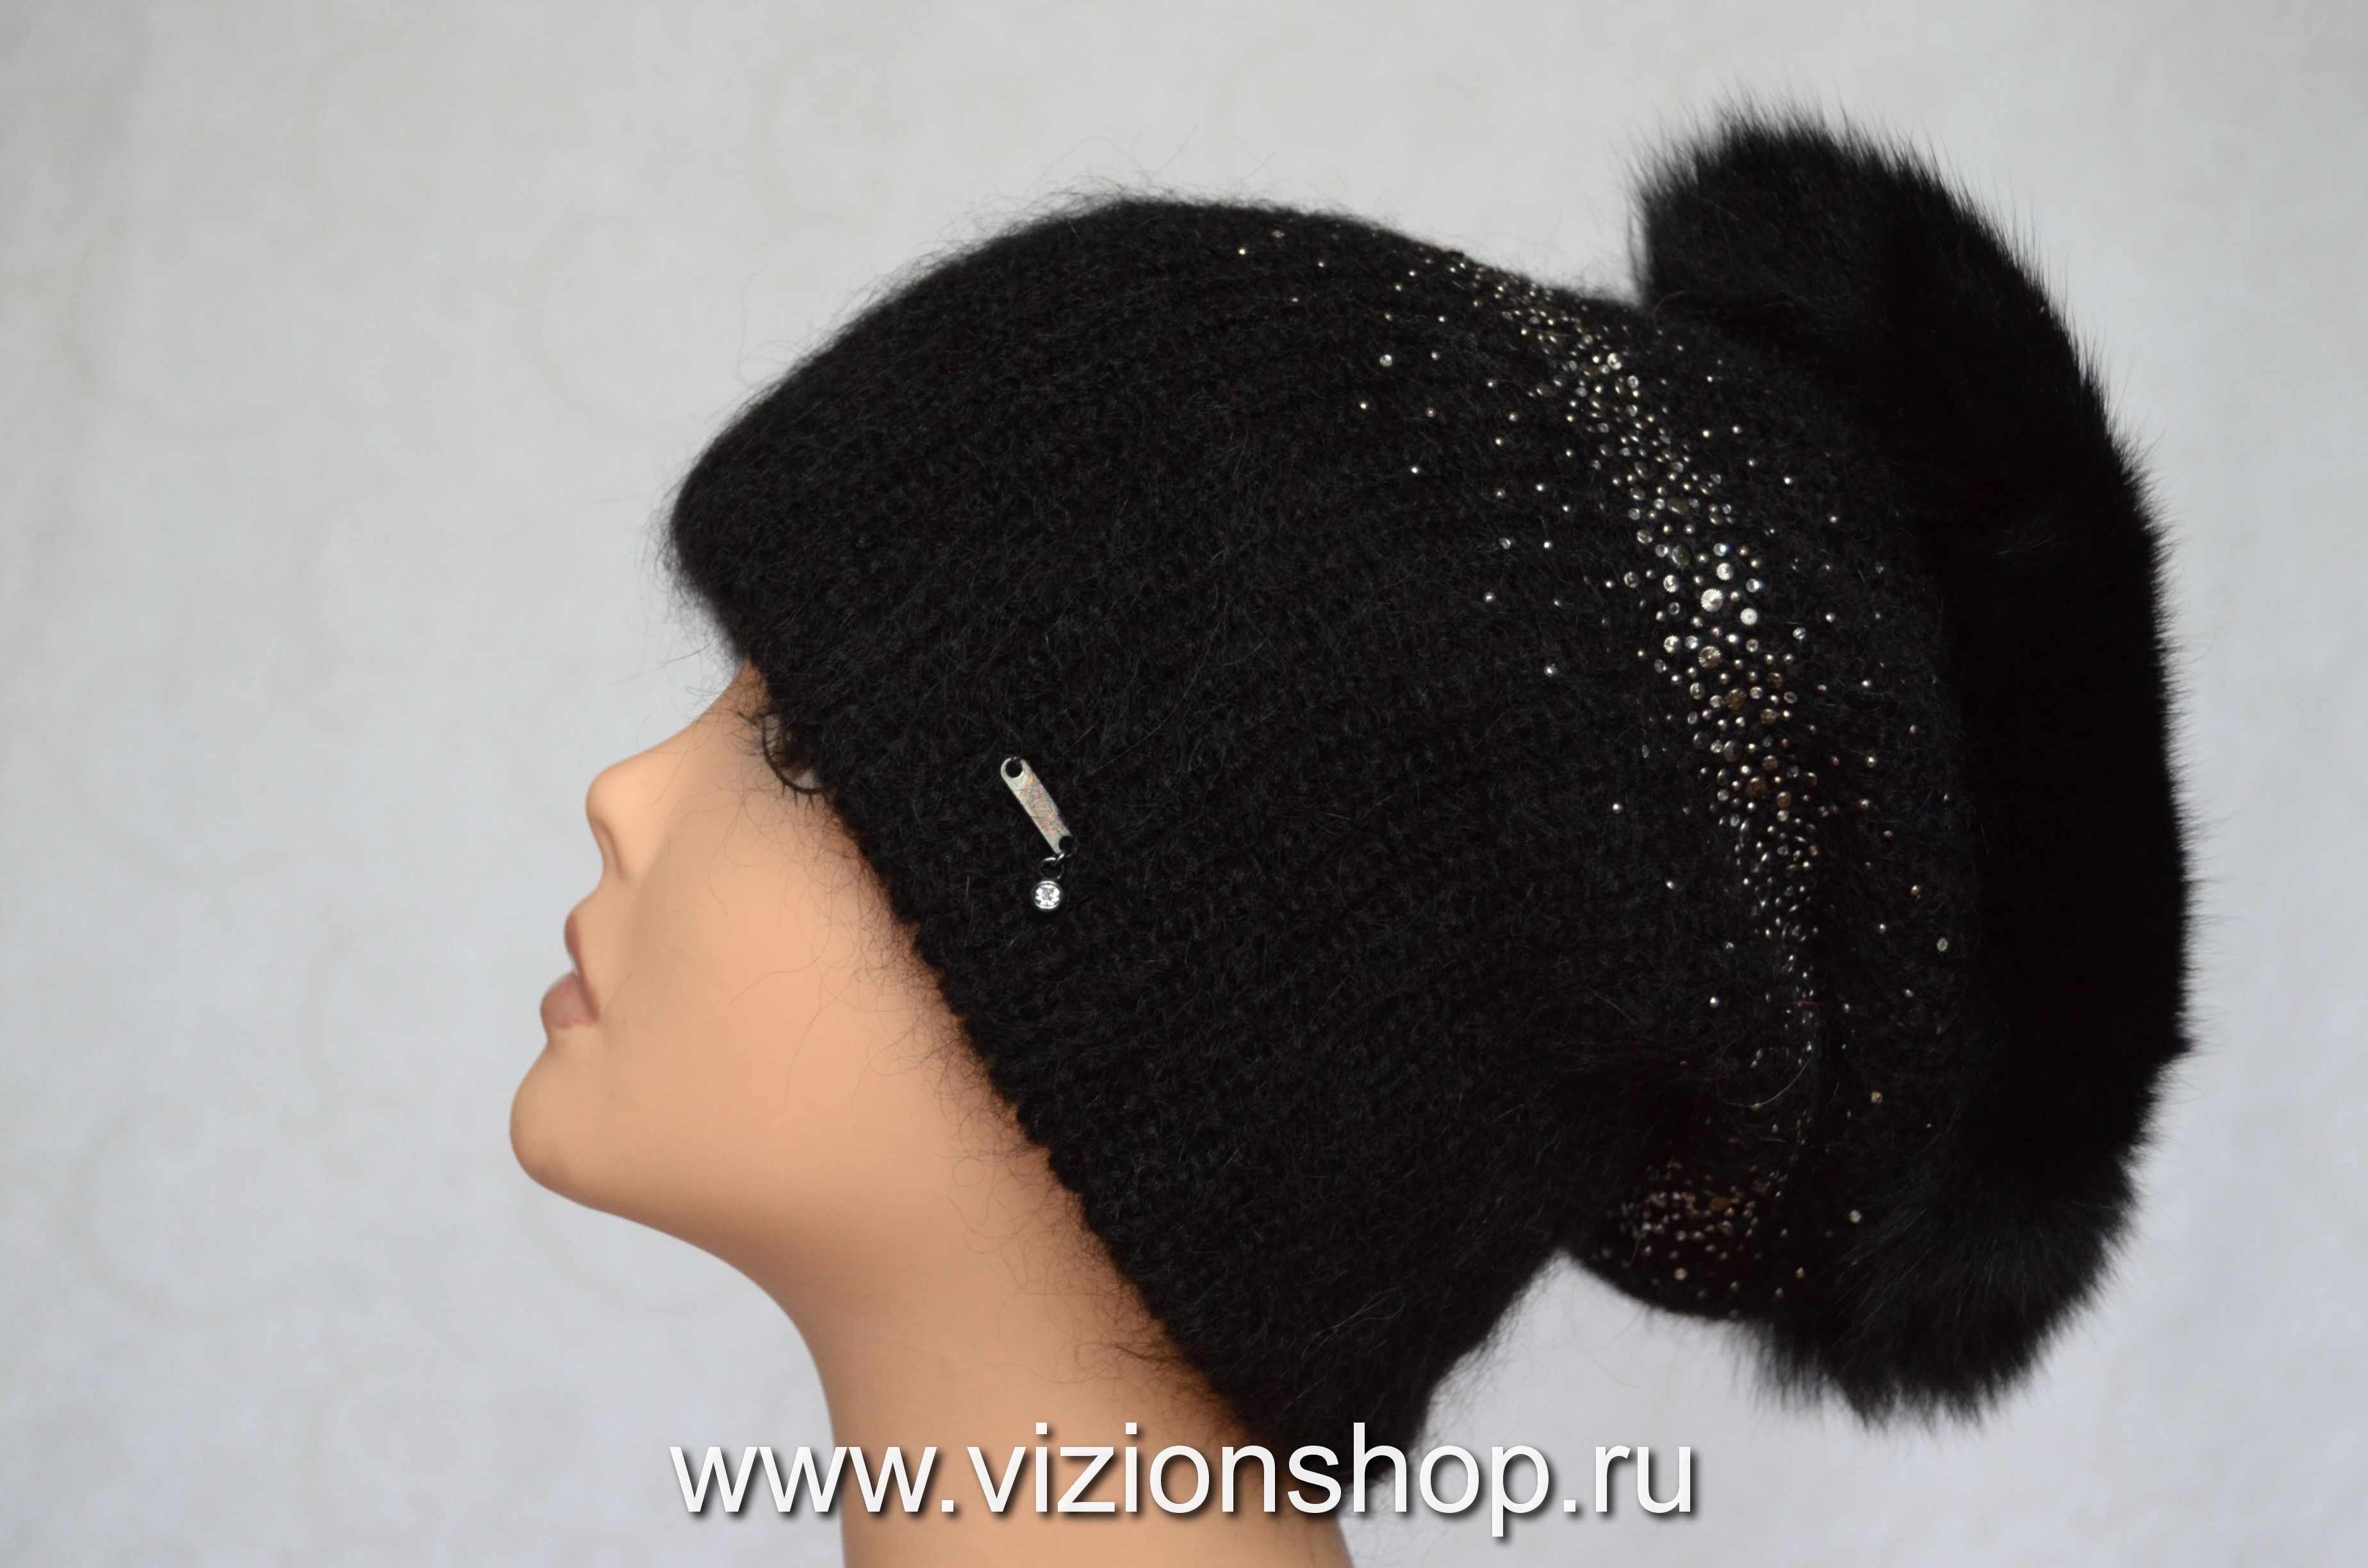 Vizio итальянские шапки зима 2020 в интернет магазине головных уборов Визио www.vizionshop.ru